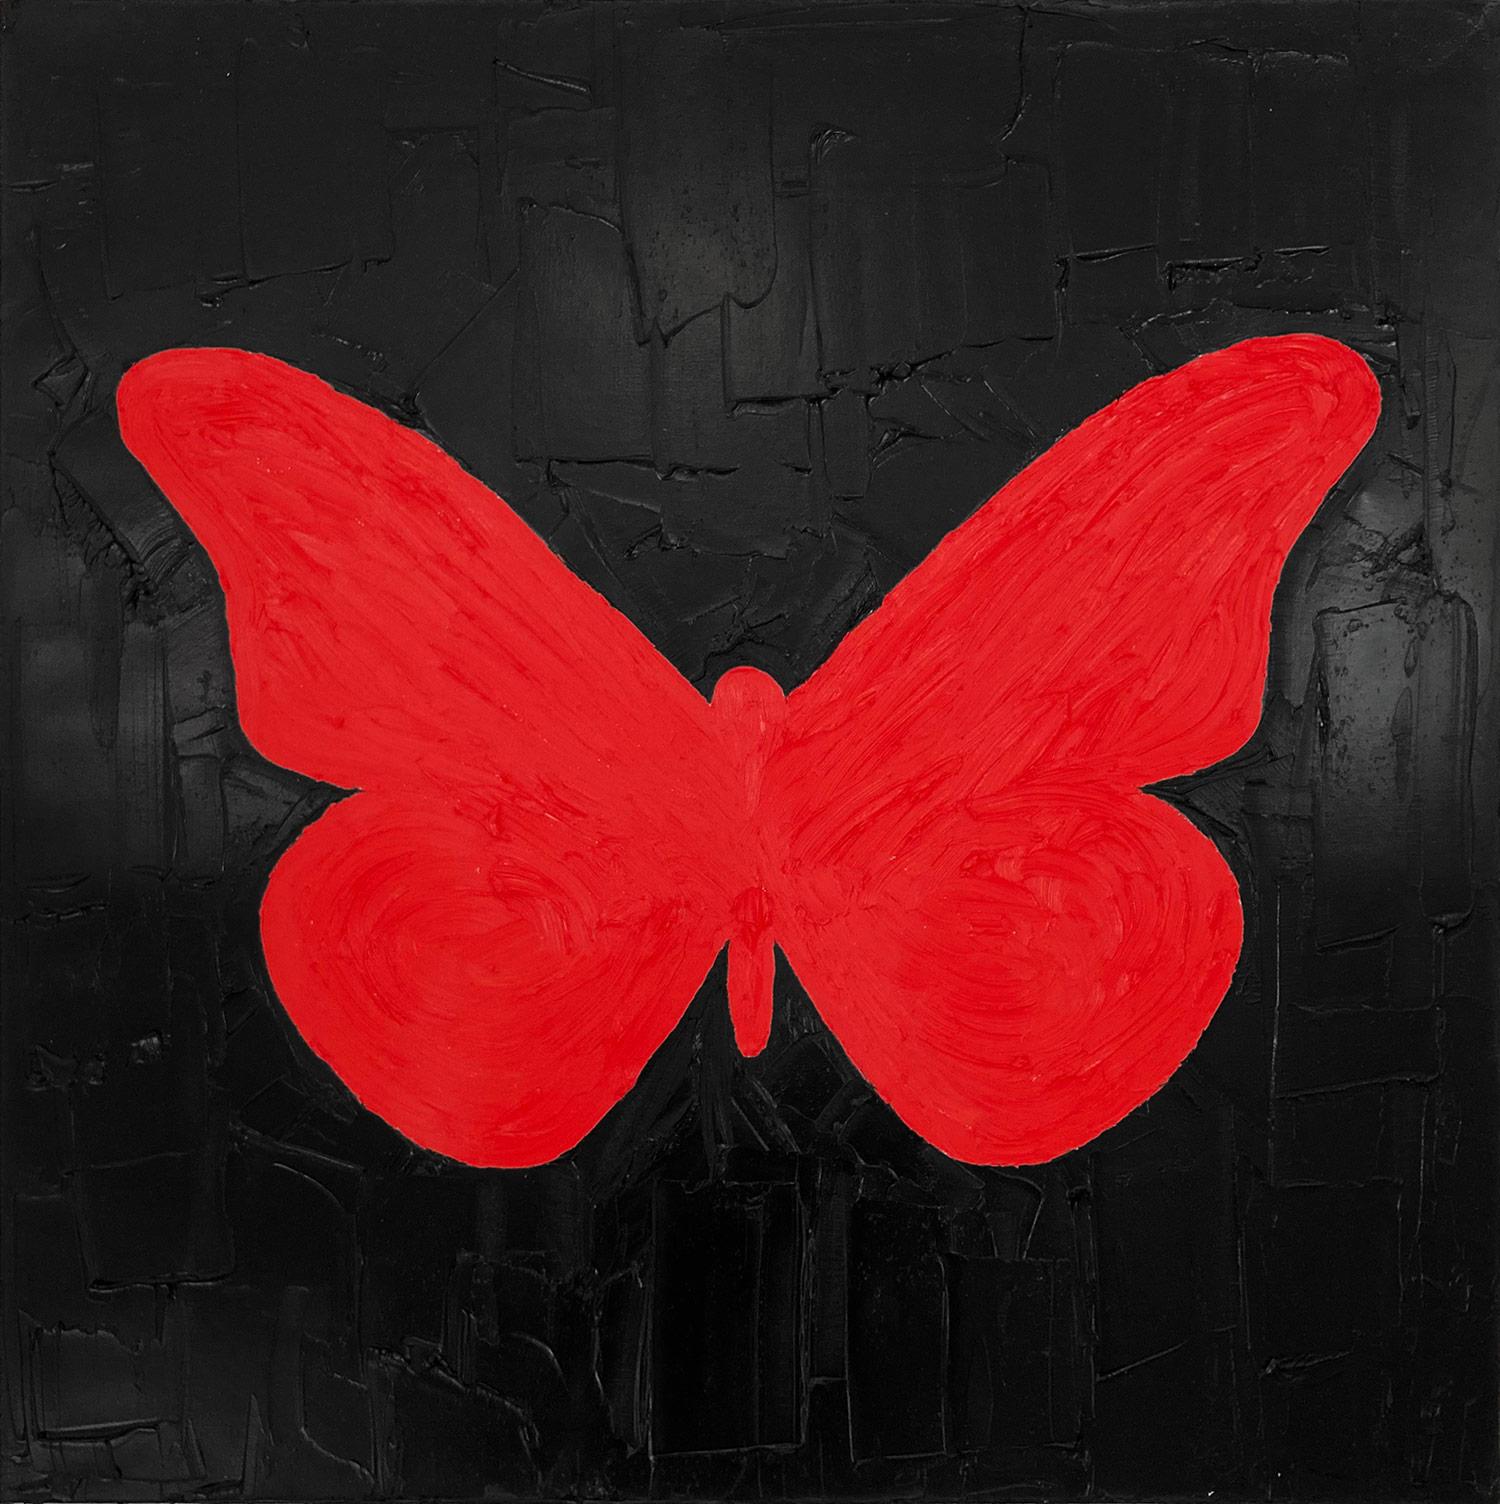 ""Mein elektrischer roter Schmetterling" Rotes und schwarzes zeitgenössisches Ölgemälde auf Leinwand